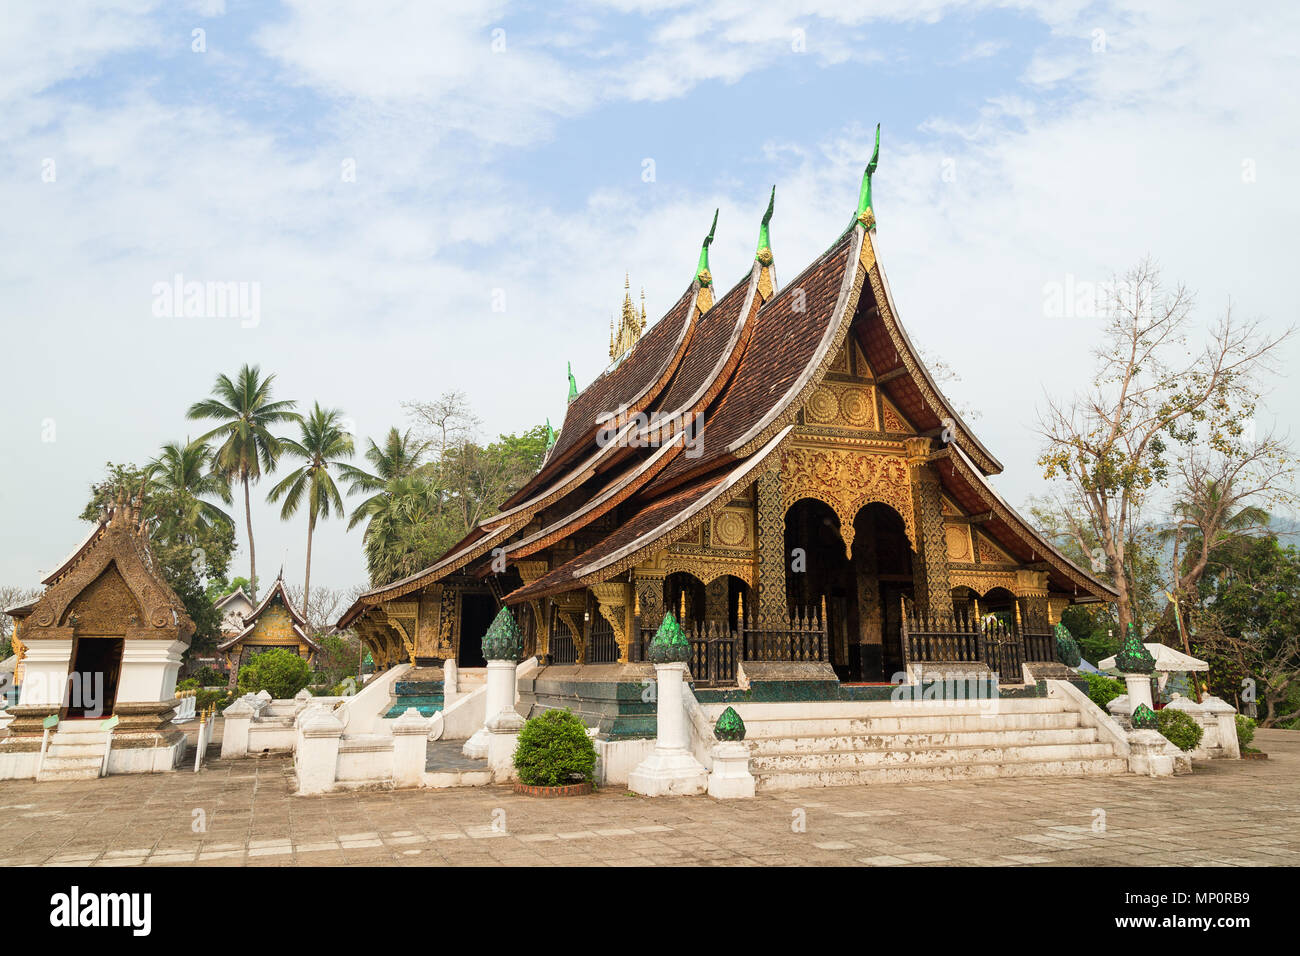 Vue sur le temple bouddhiste Wat Xieng Thong (Temple de la ville d'or') à Luang Prabang, Laos. Banque D'Images